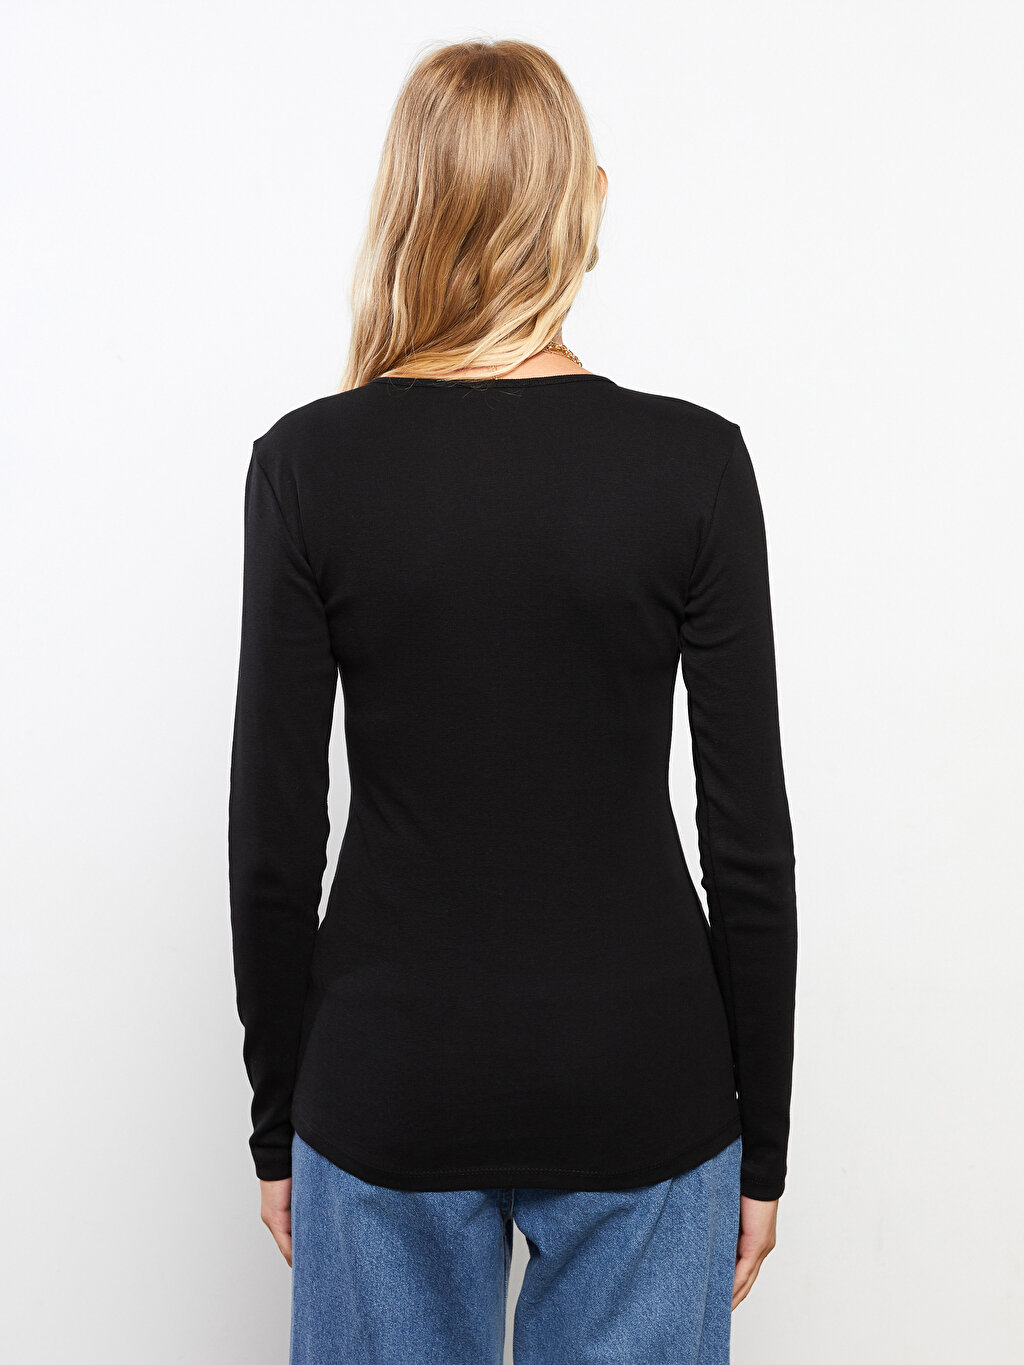 Crew Neck Regular Long Sleeve Cotton Women's T-shirt -W25229Z8-CVL ...